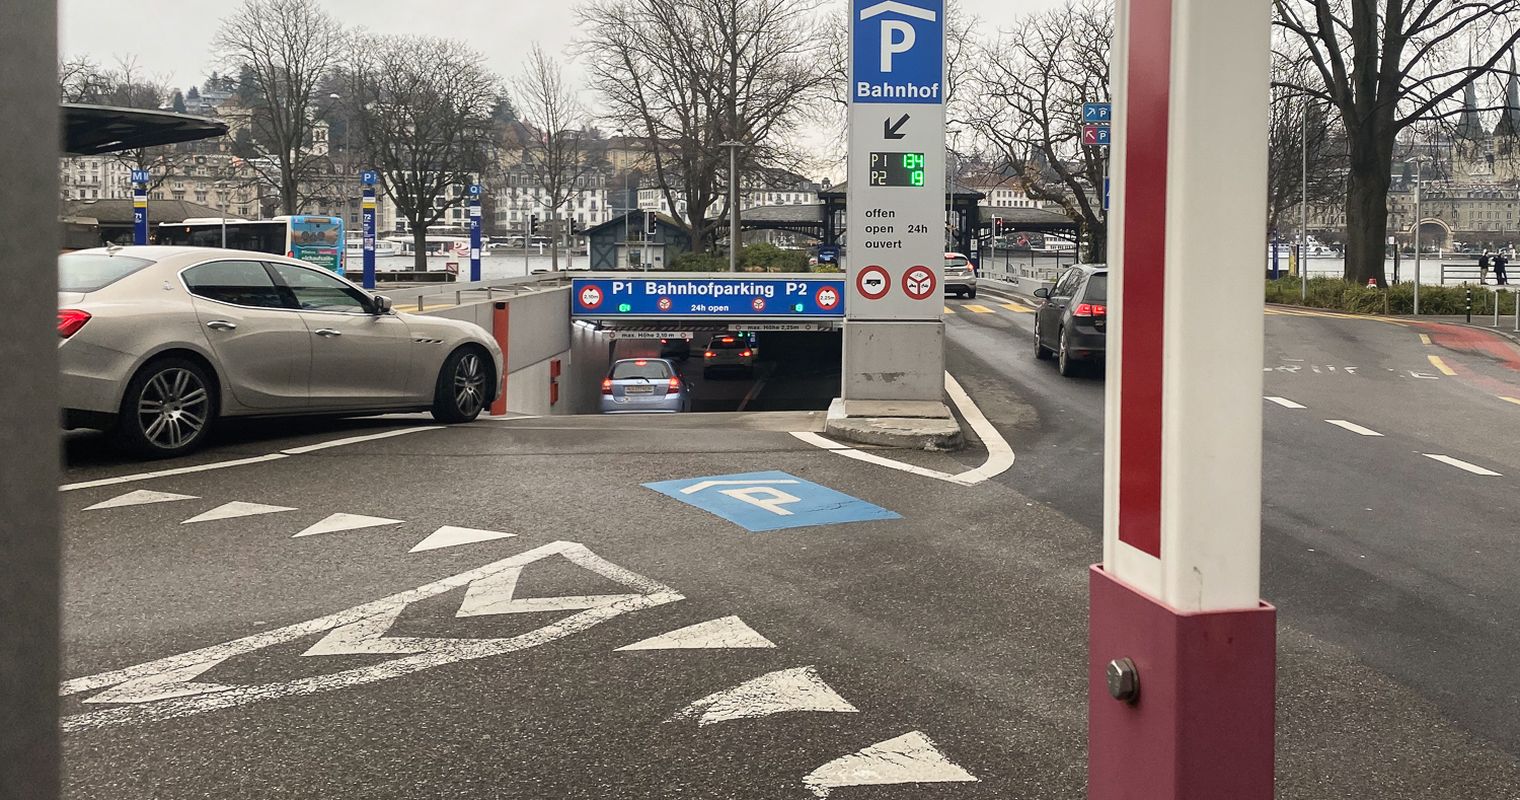 Luzerner Durchgangsbahnhof: Wohin mit den Autos?